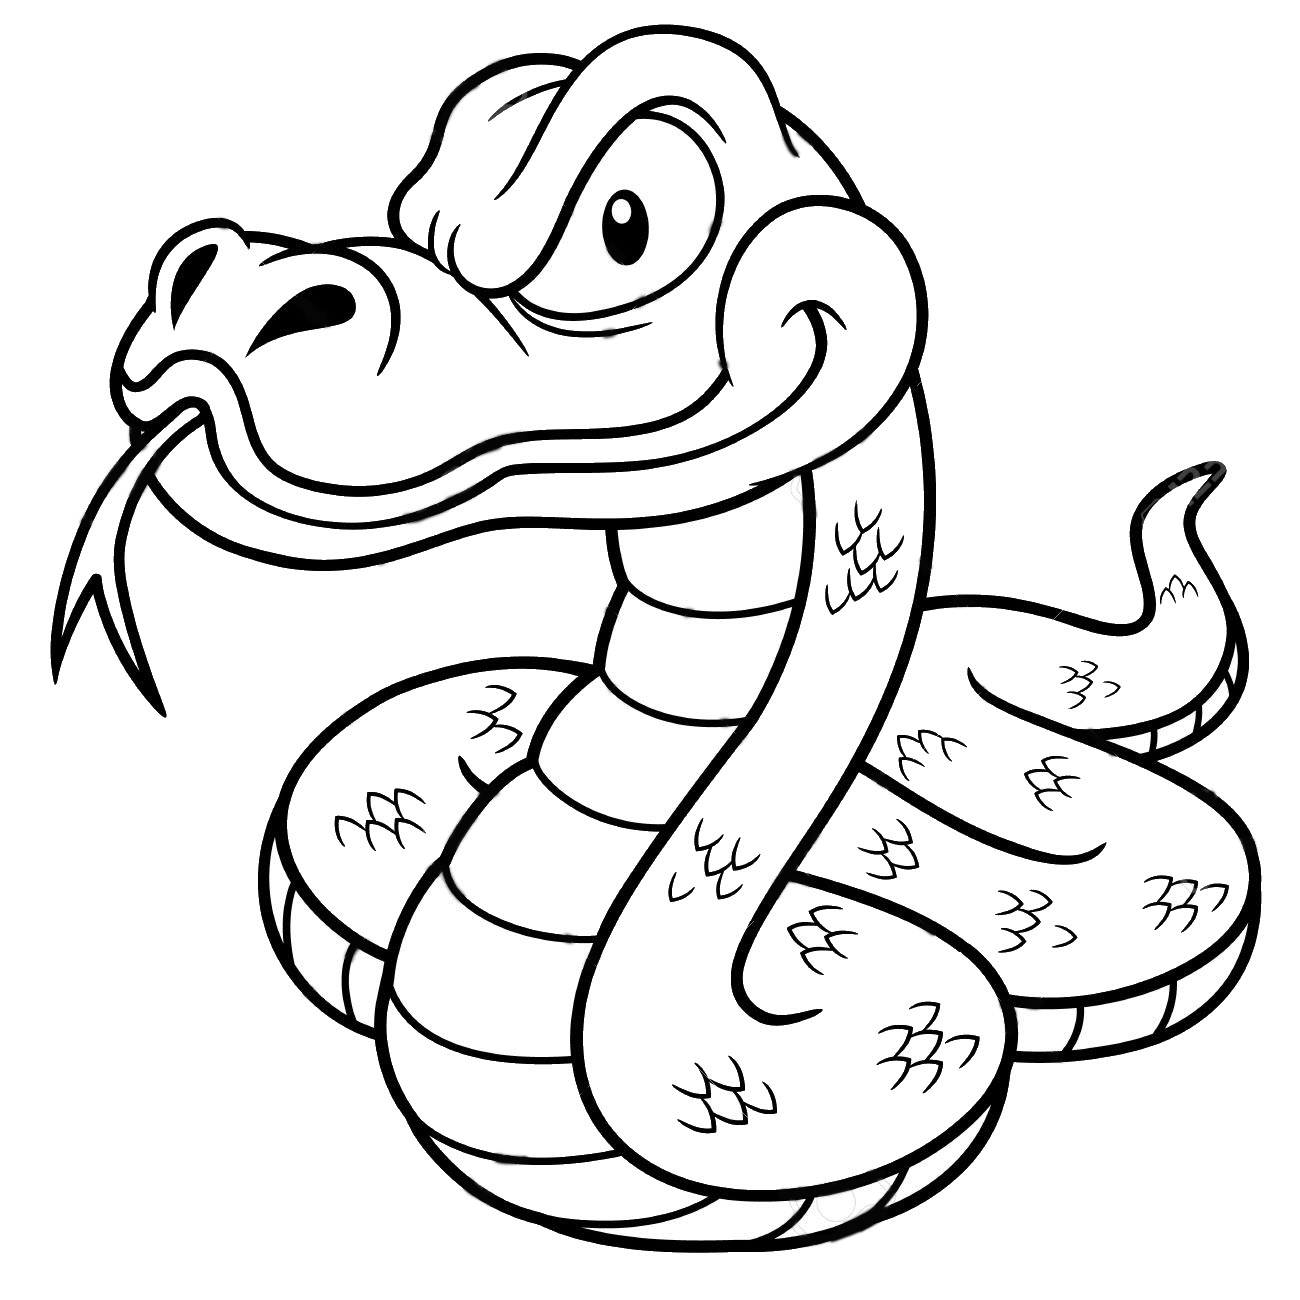 Tranh tô màu con rắn hoạt hình